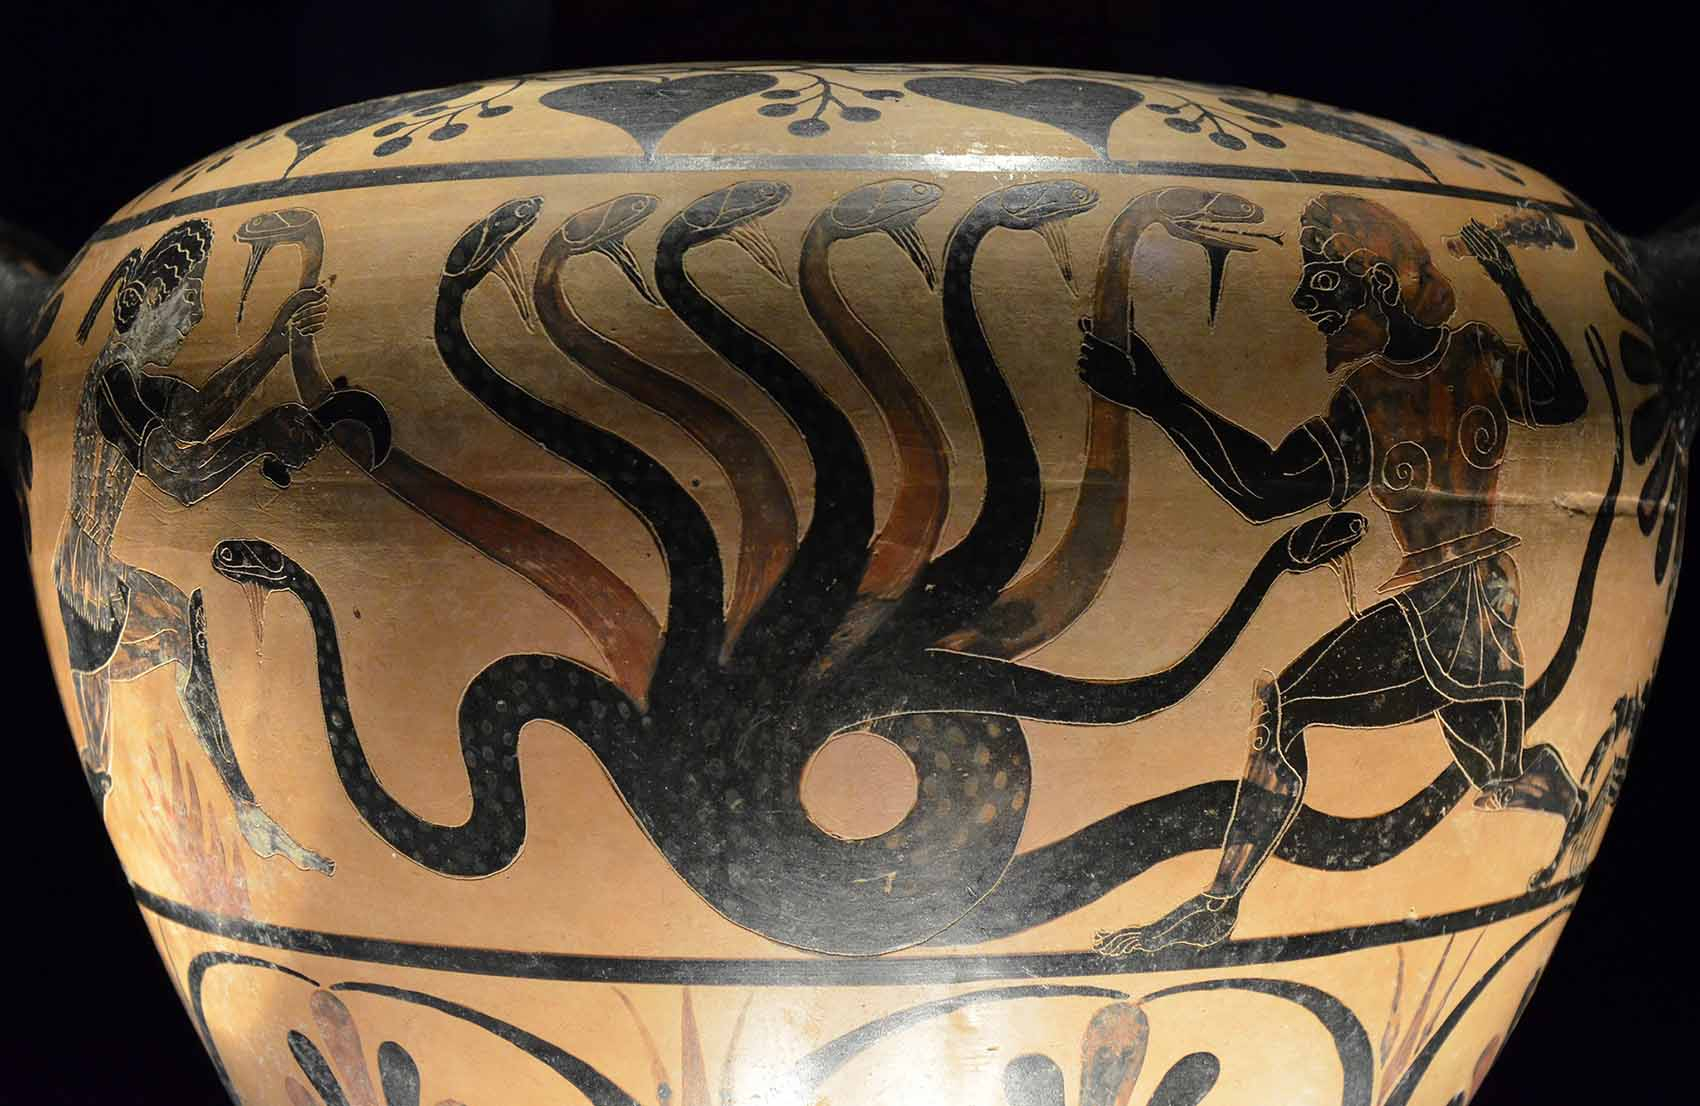 Céramique représentant le combat d'Hercule contre l'Hydre de Lerne exposée au palais Massimo des Thernes de Rome (530-500 av. JC) © Carole Raddato/Flickr